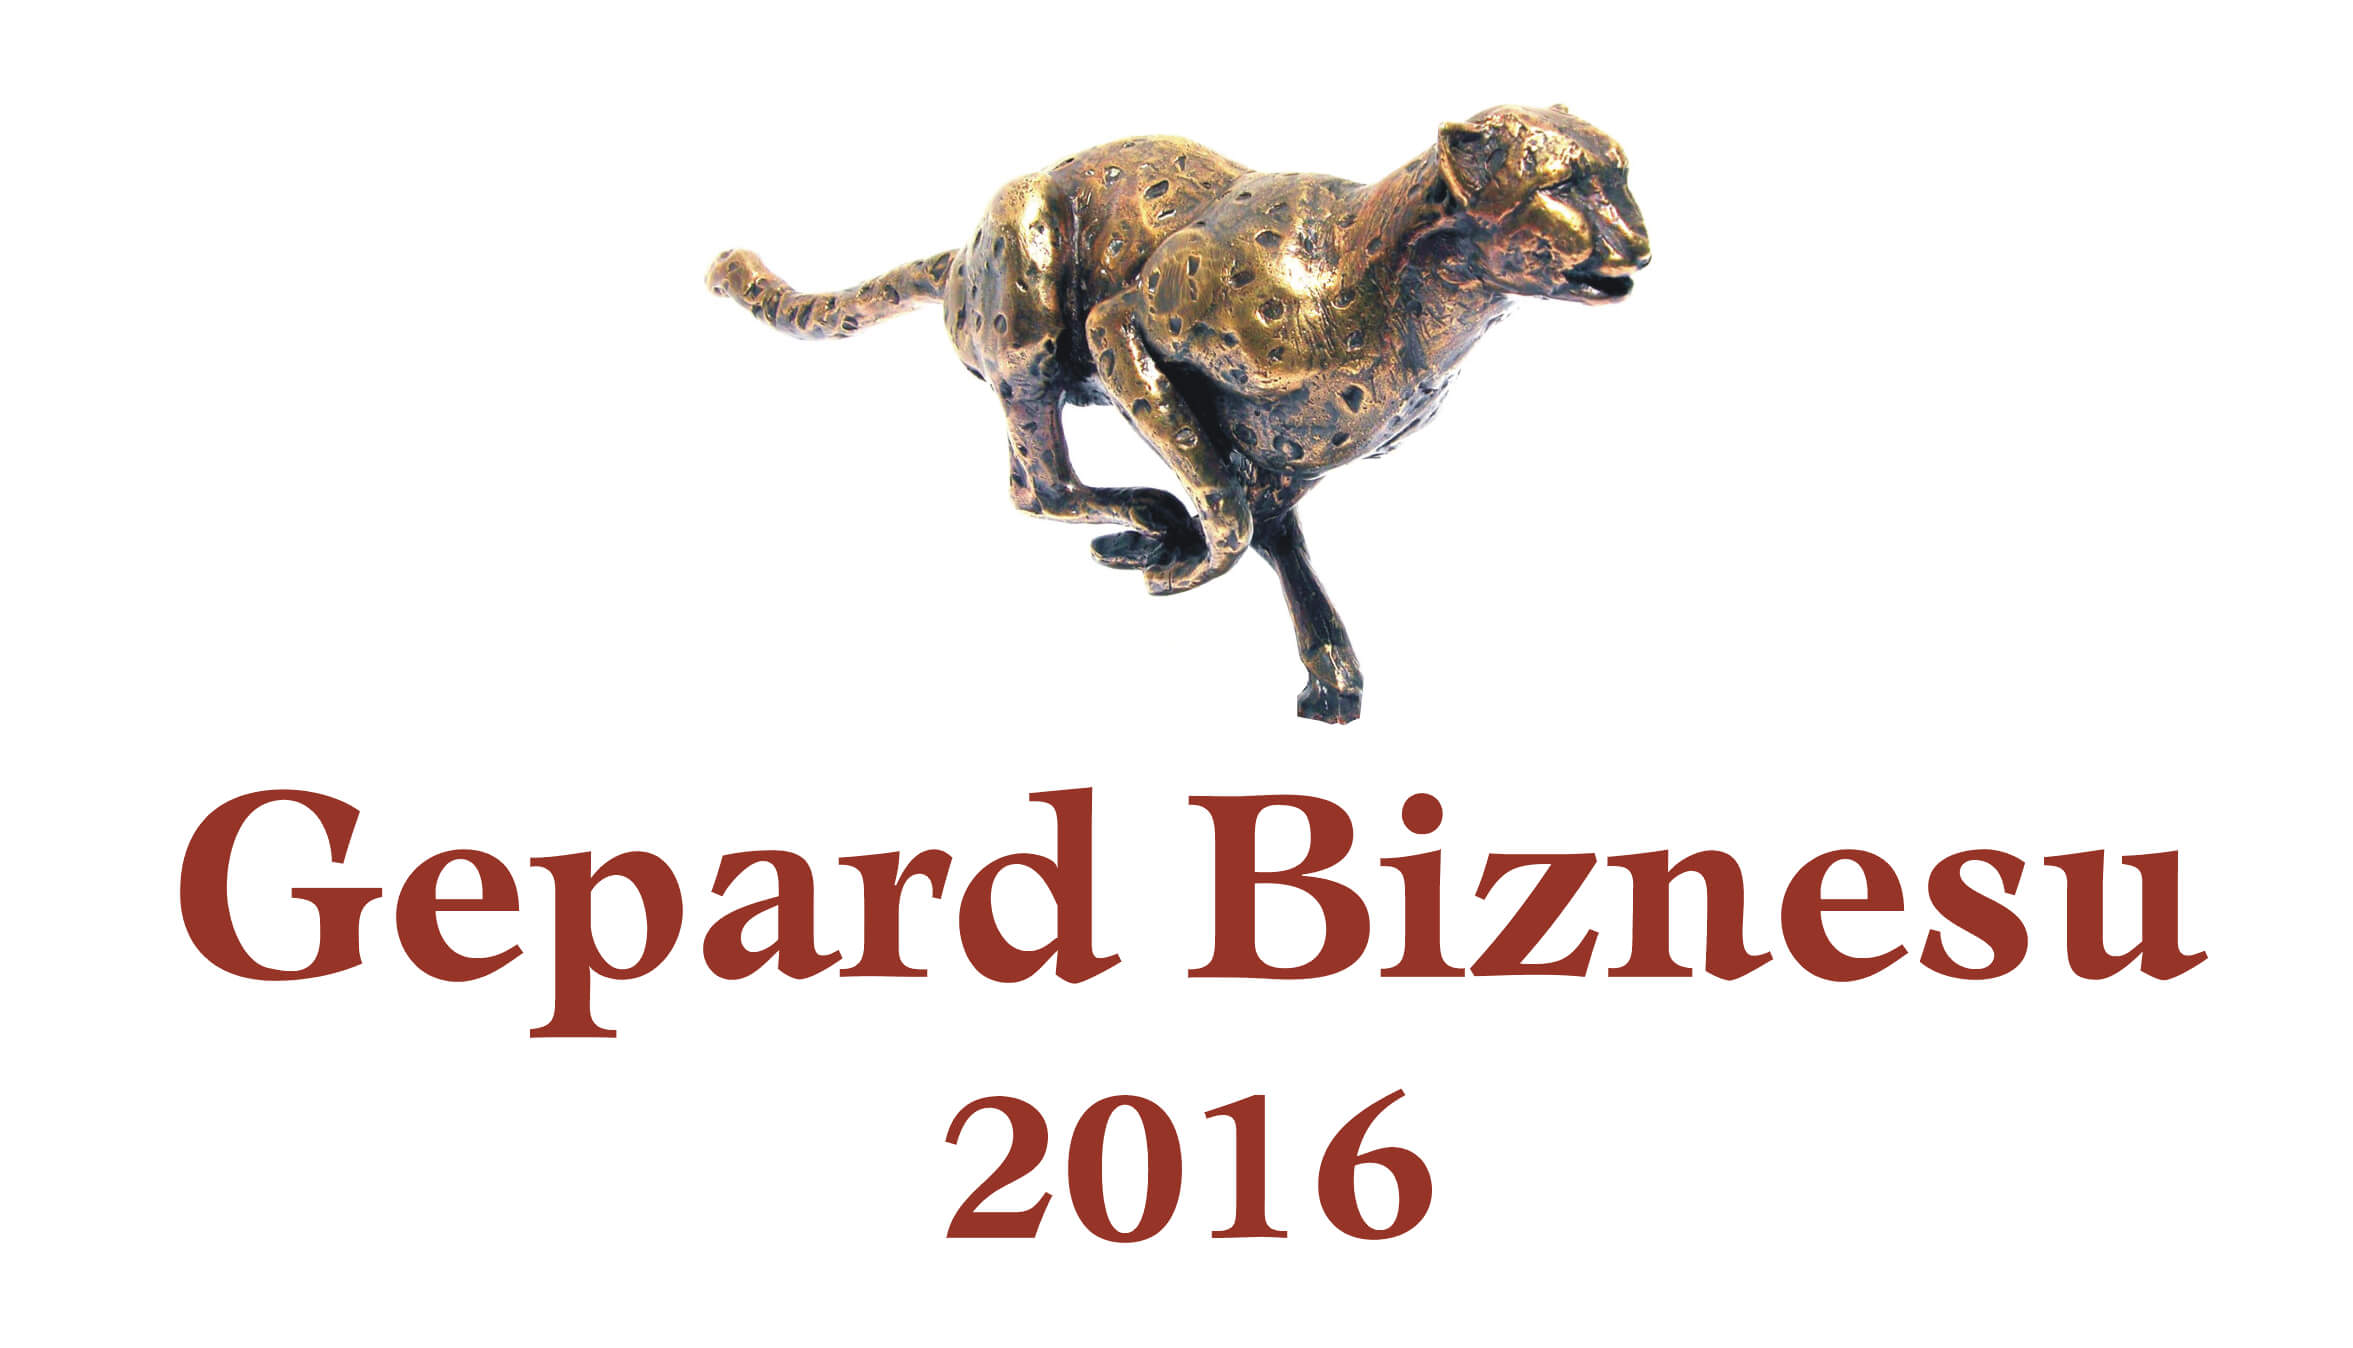 Gepardy Biznesu 2016